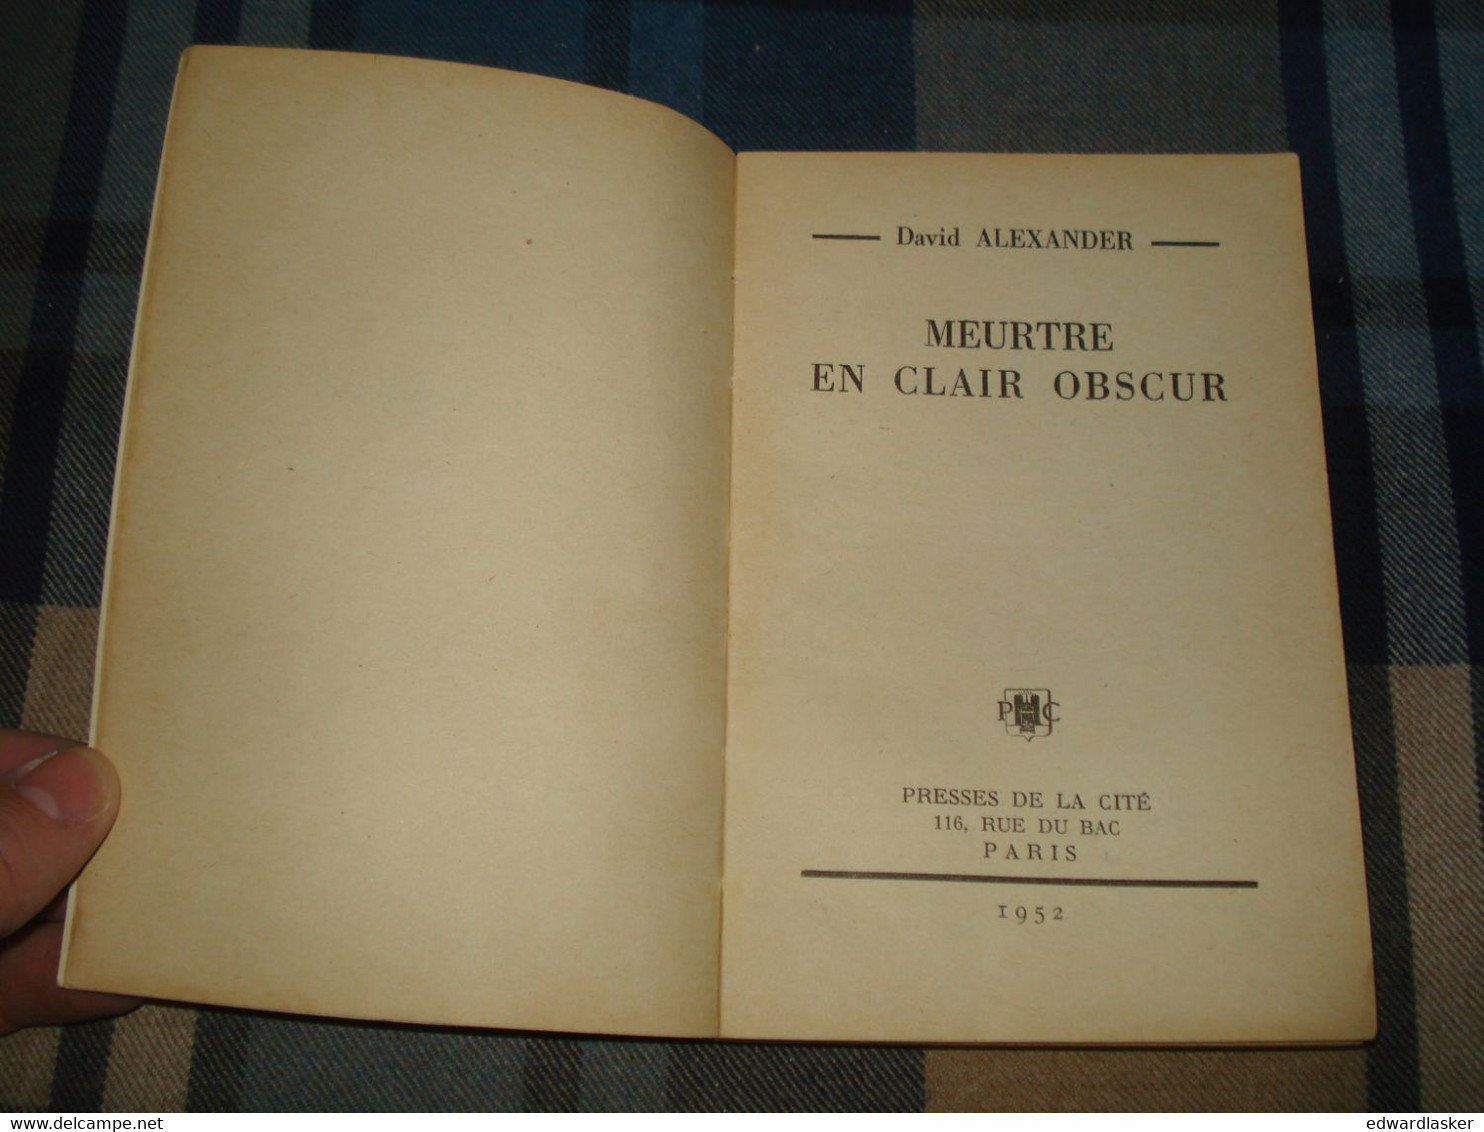 Un MYSTERE N°100 : MEURTRE En CLAIR OBSCUR /David ALEXANDER - Août 1952 - Presses De La Cité